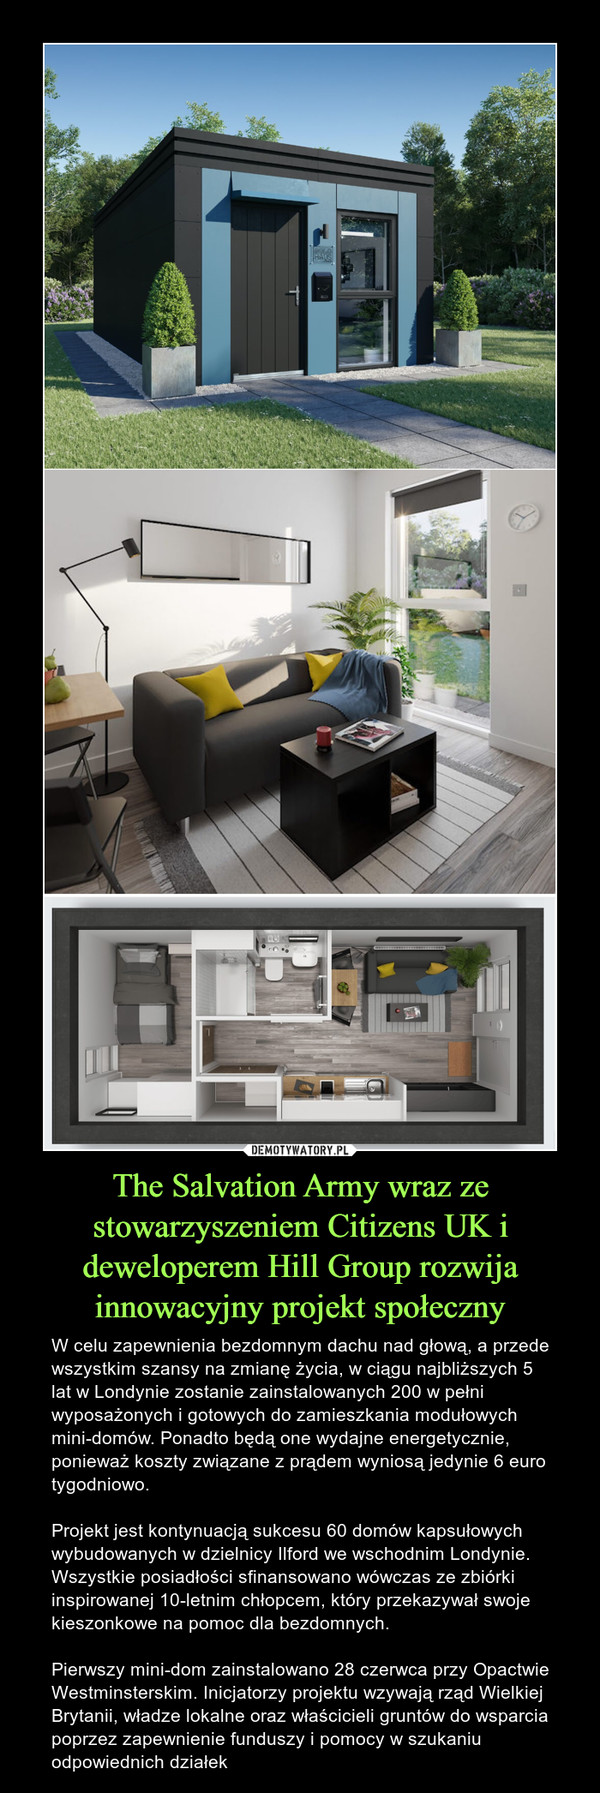 The Salvation Army wraz ze stowarzyszeniem Citizens UK i deweloperem Hill Group rozwija innowacyjny projekt społeczny